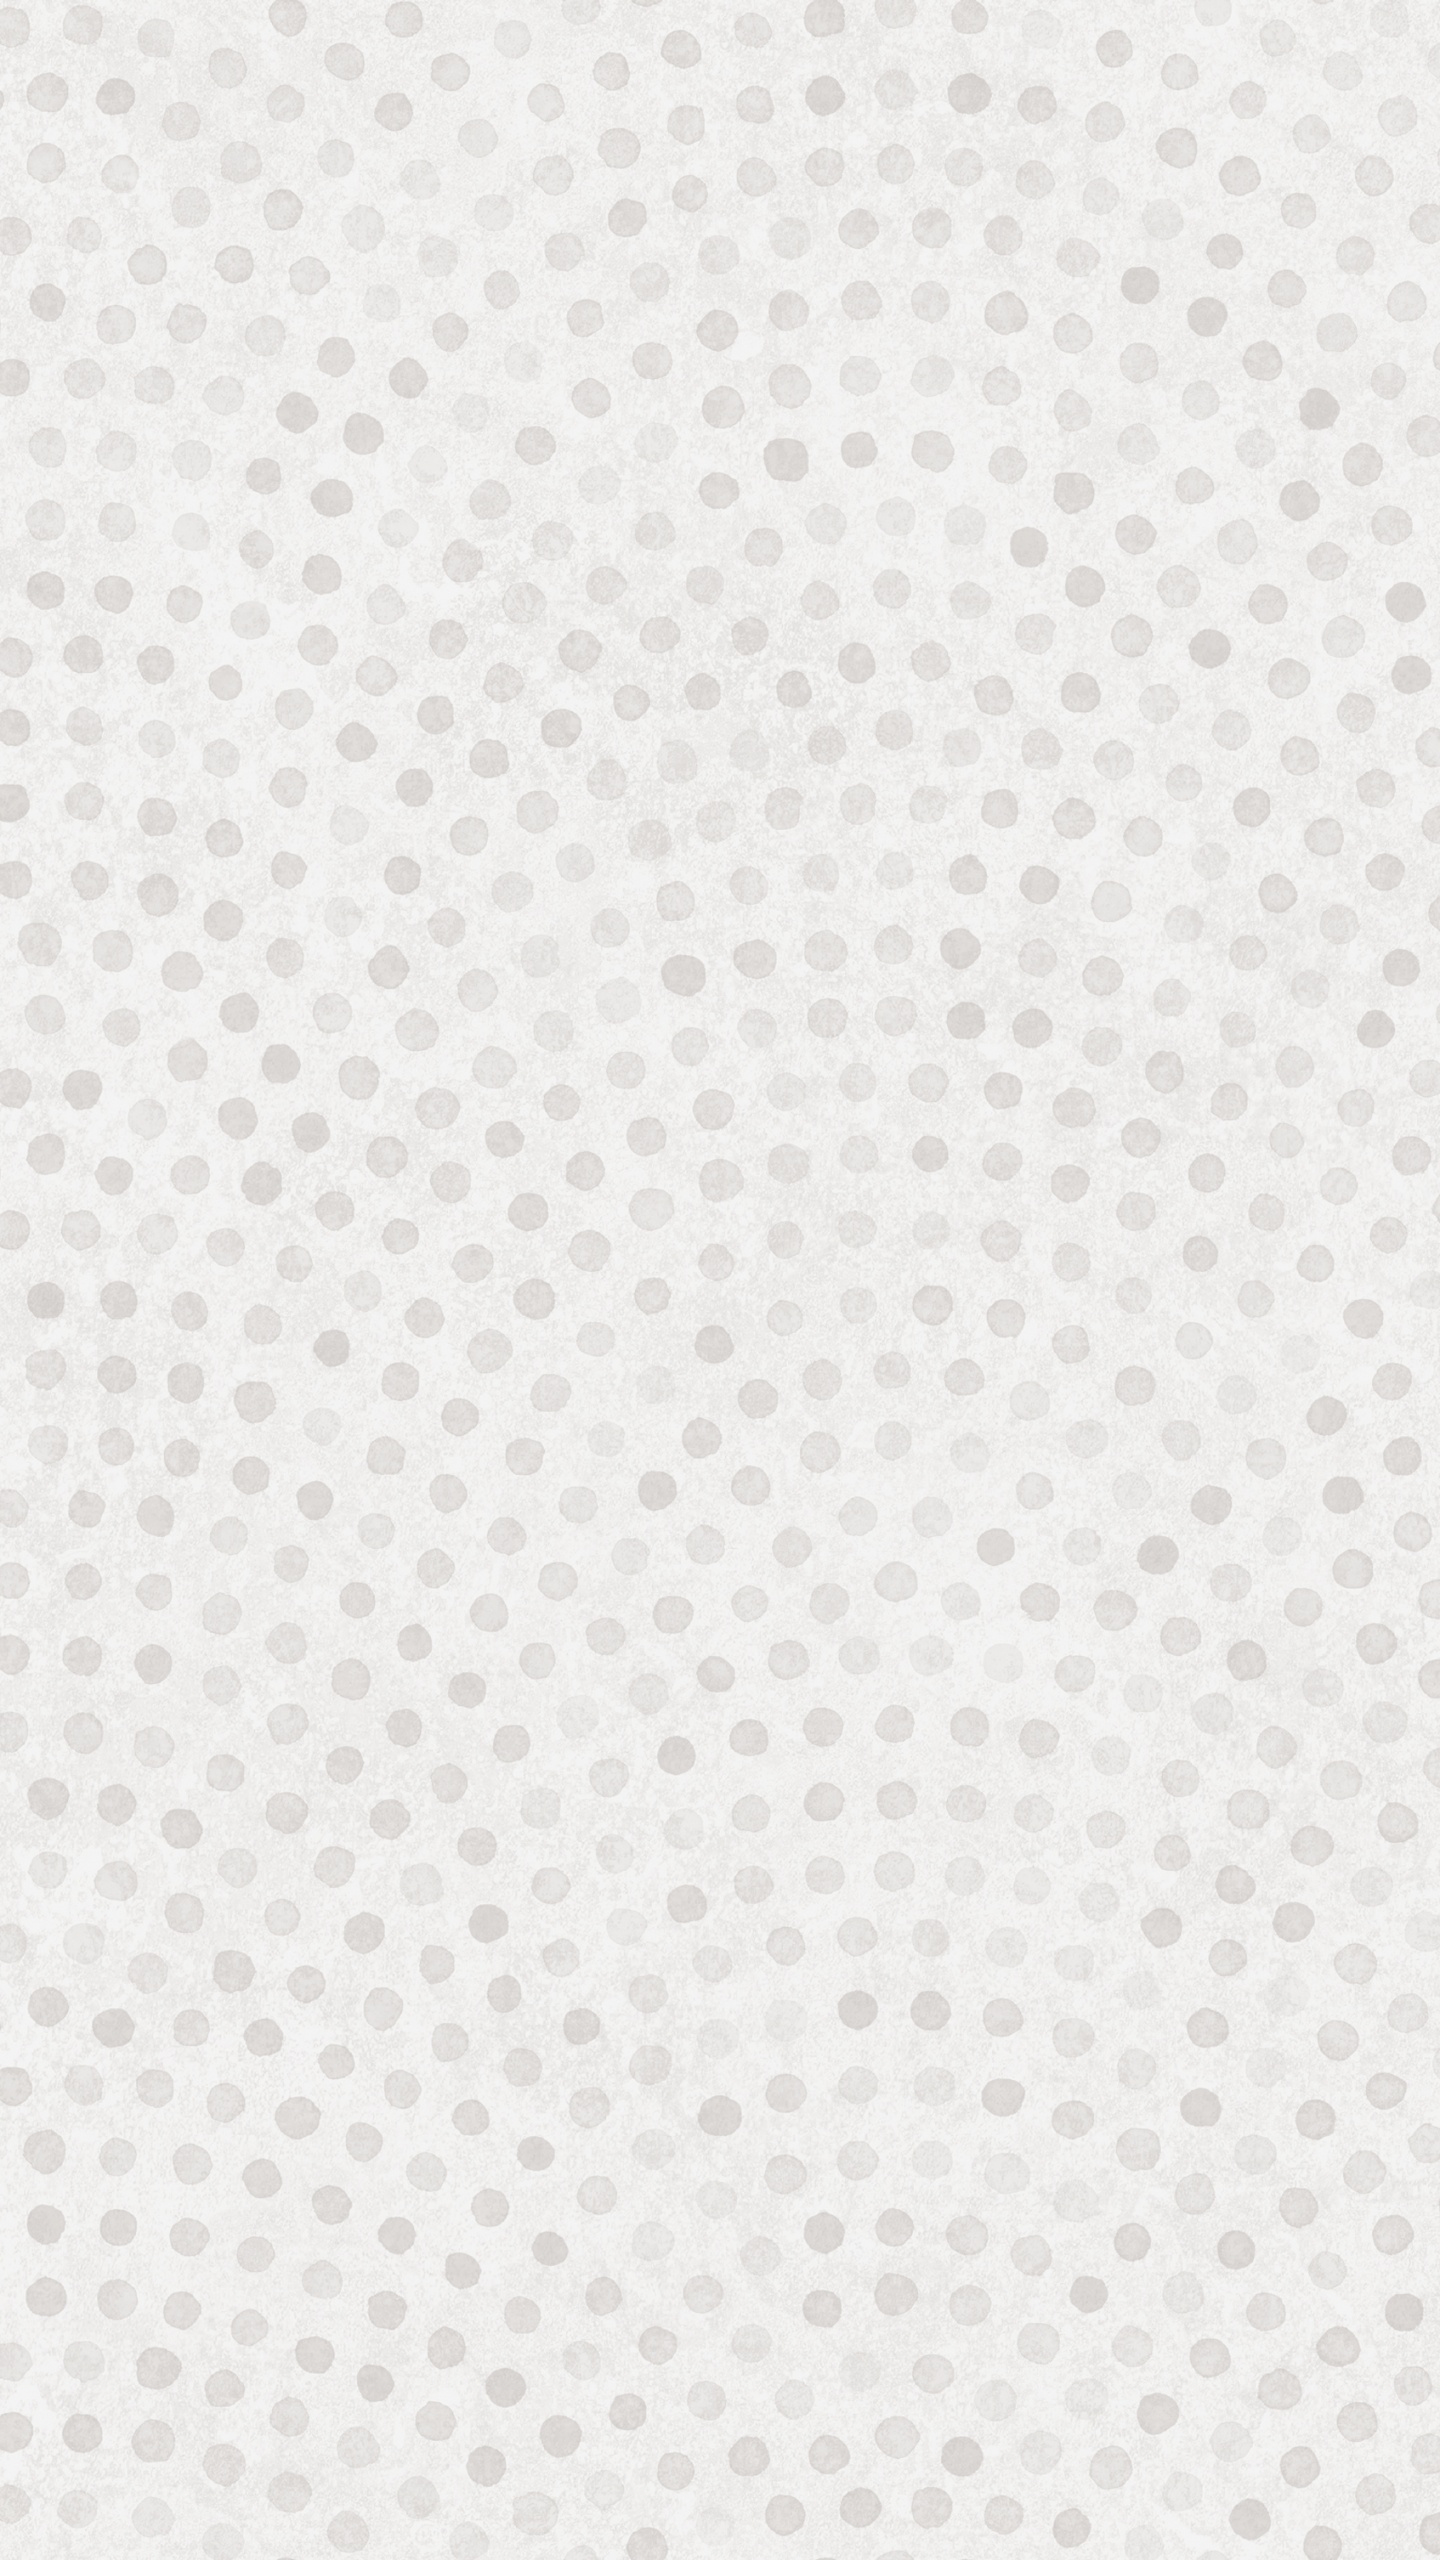 Textile à Pois Blancs et Noirs. Wallpaper in 1440x2560 Resolution